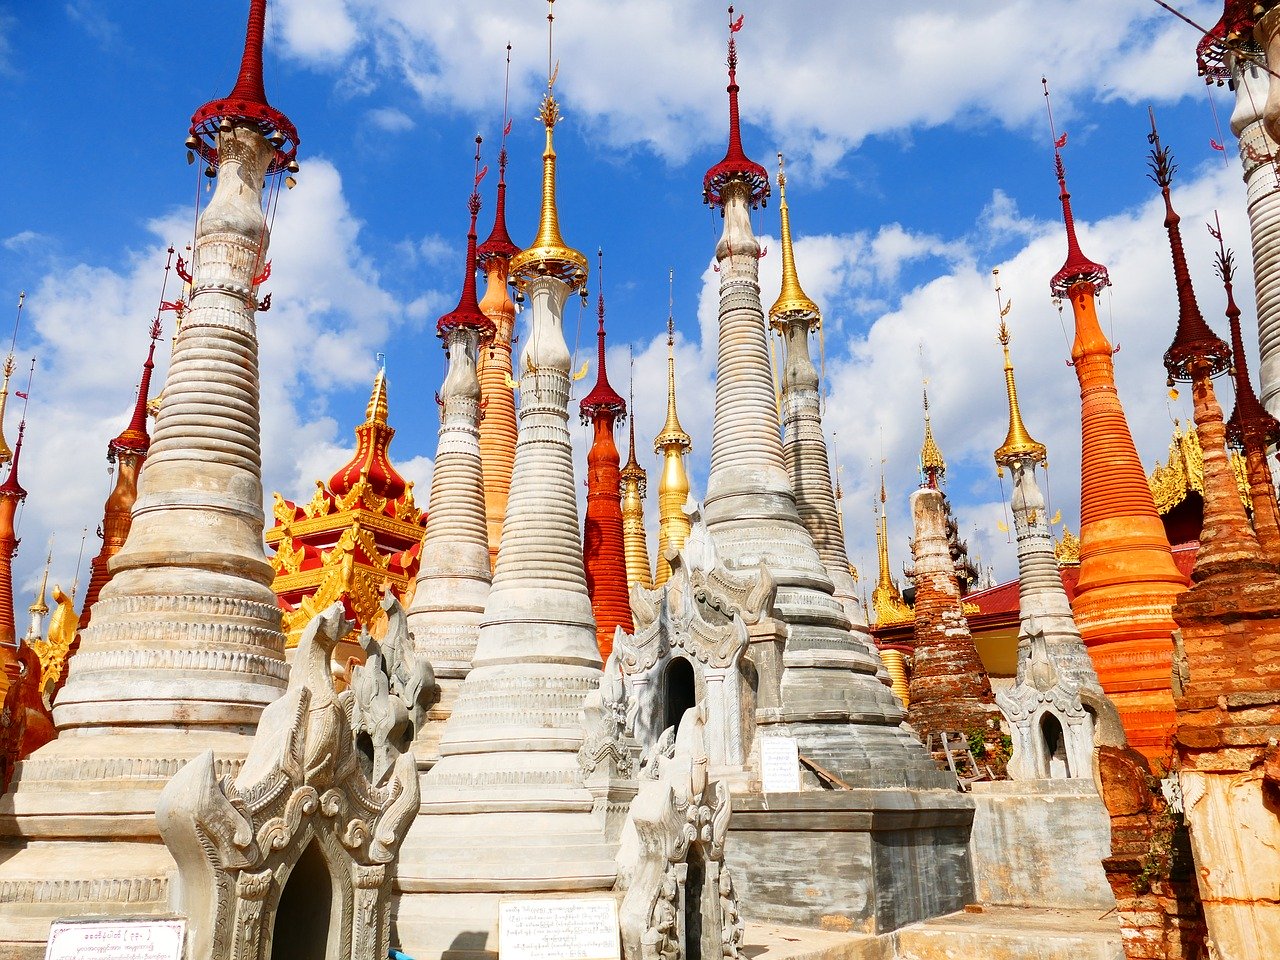 Le pagode, tra le principali attrazioni da non perdere durante un viaggio in Myanmar